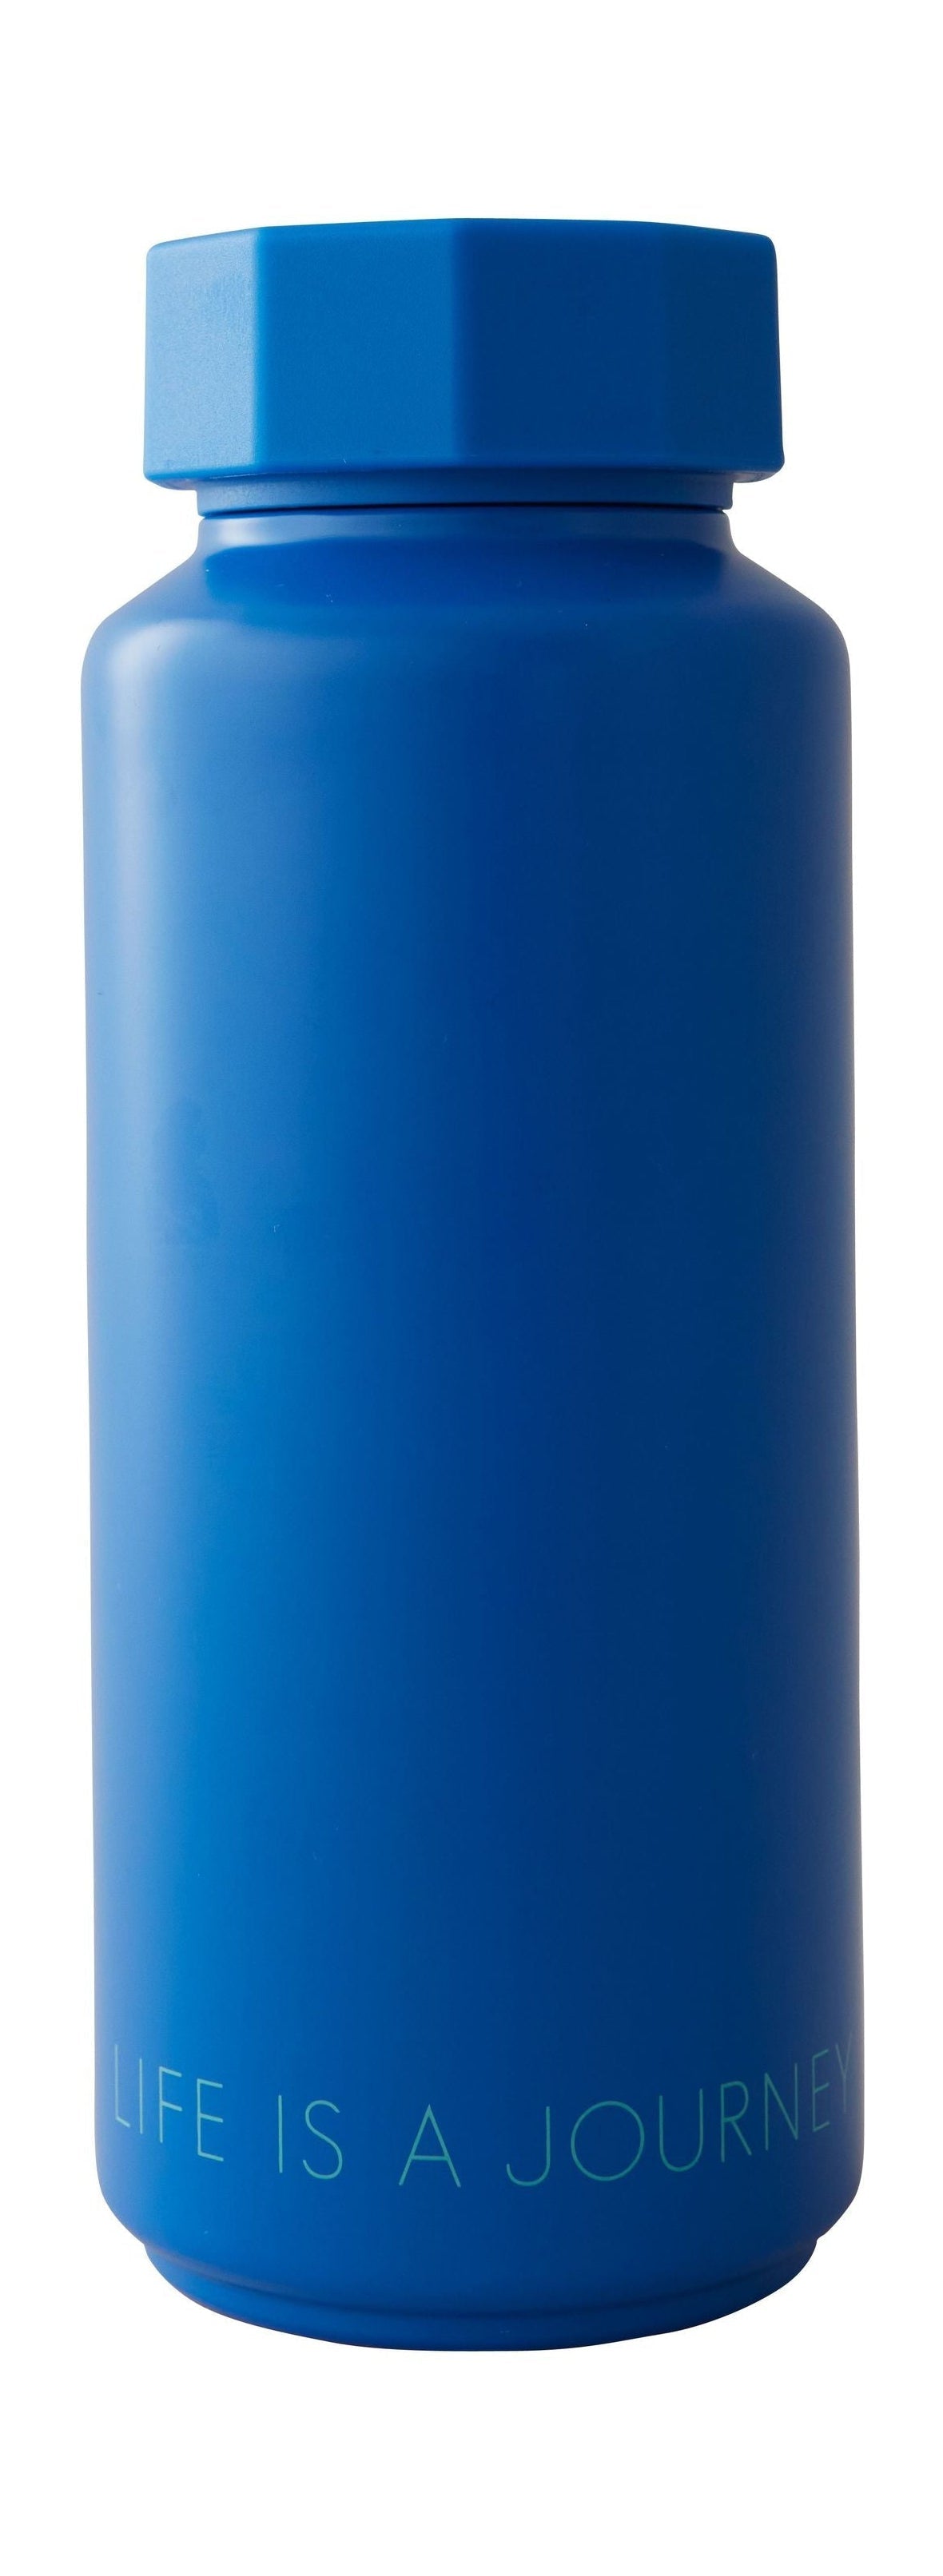 Lettere di design tono su tono bottiglia thermo, blu cobalto